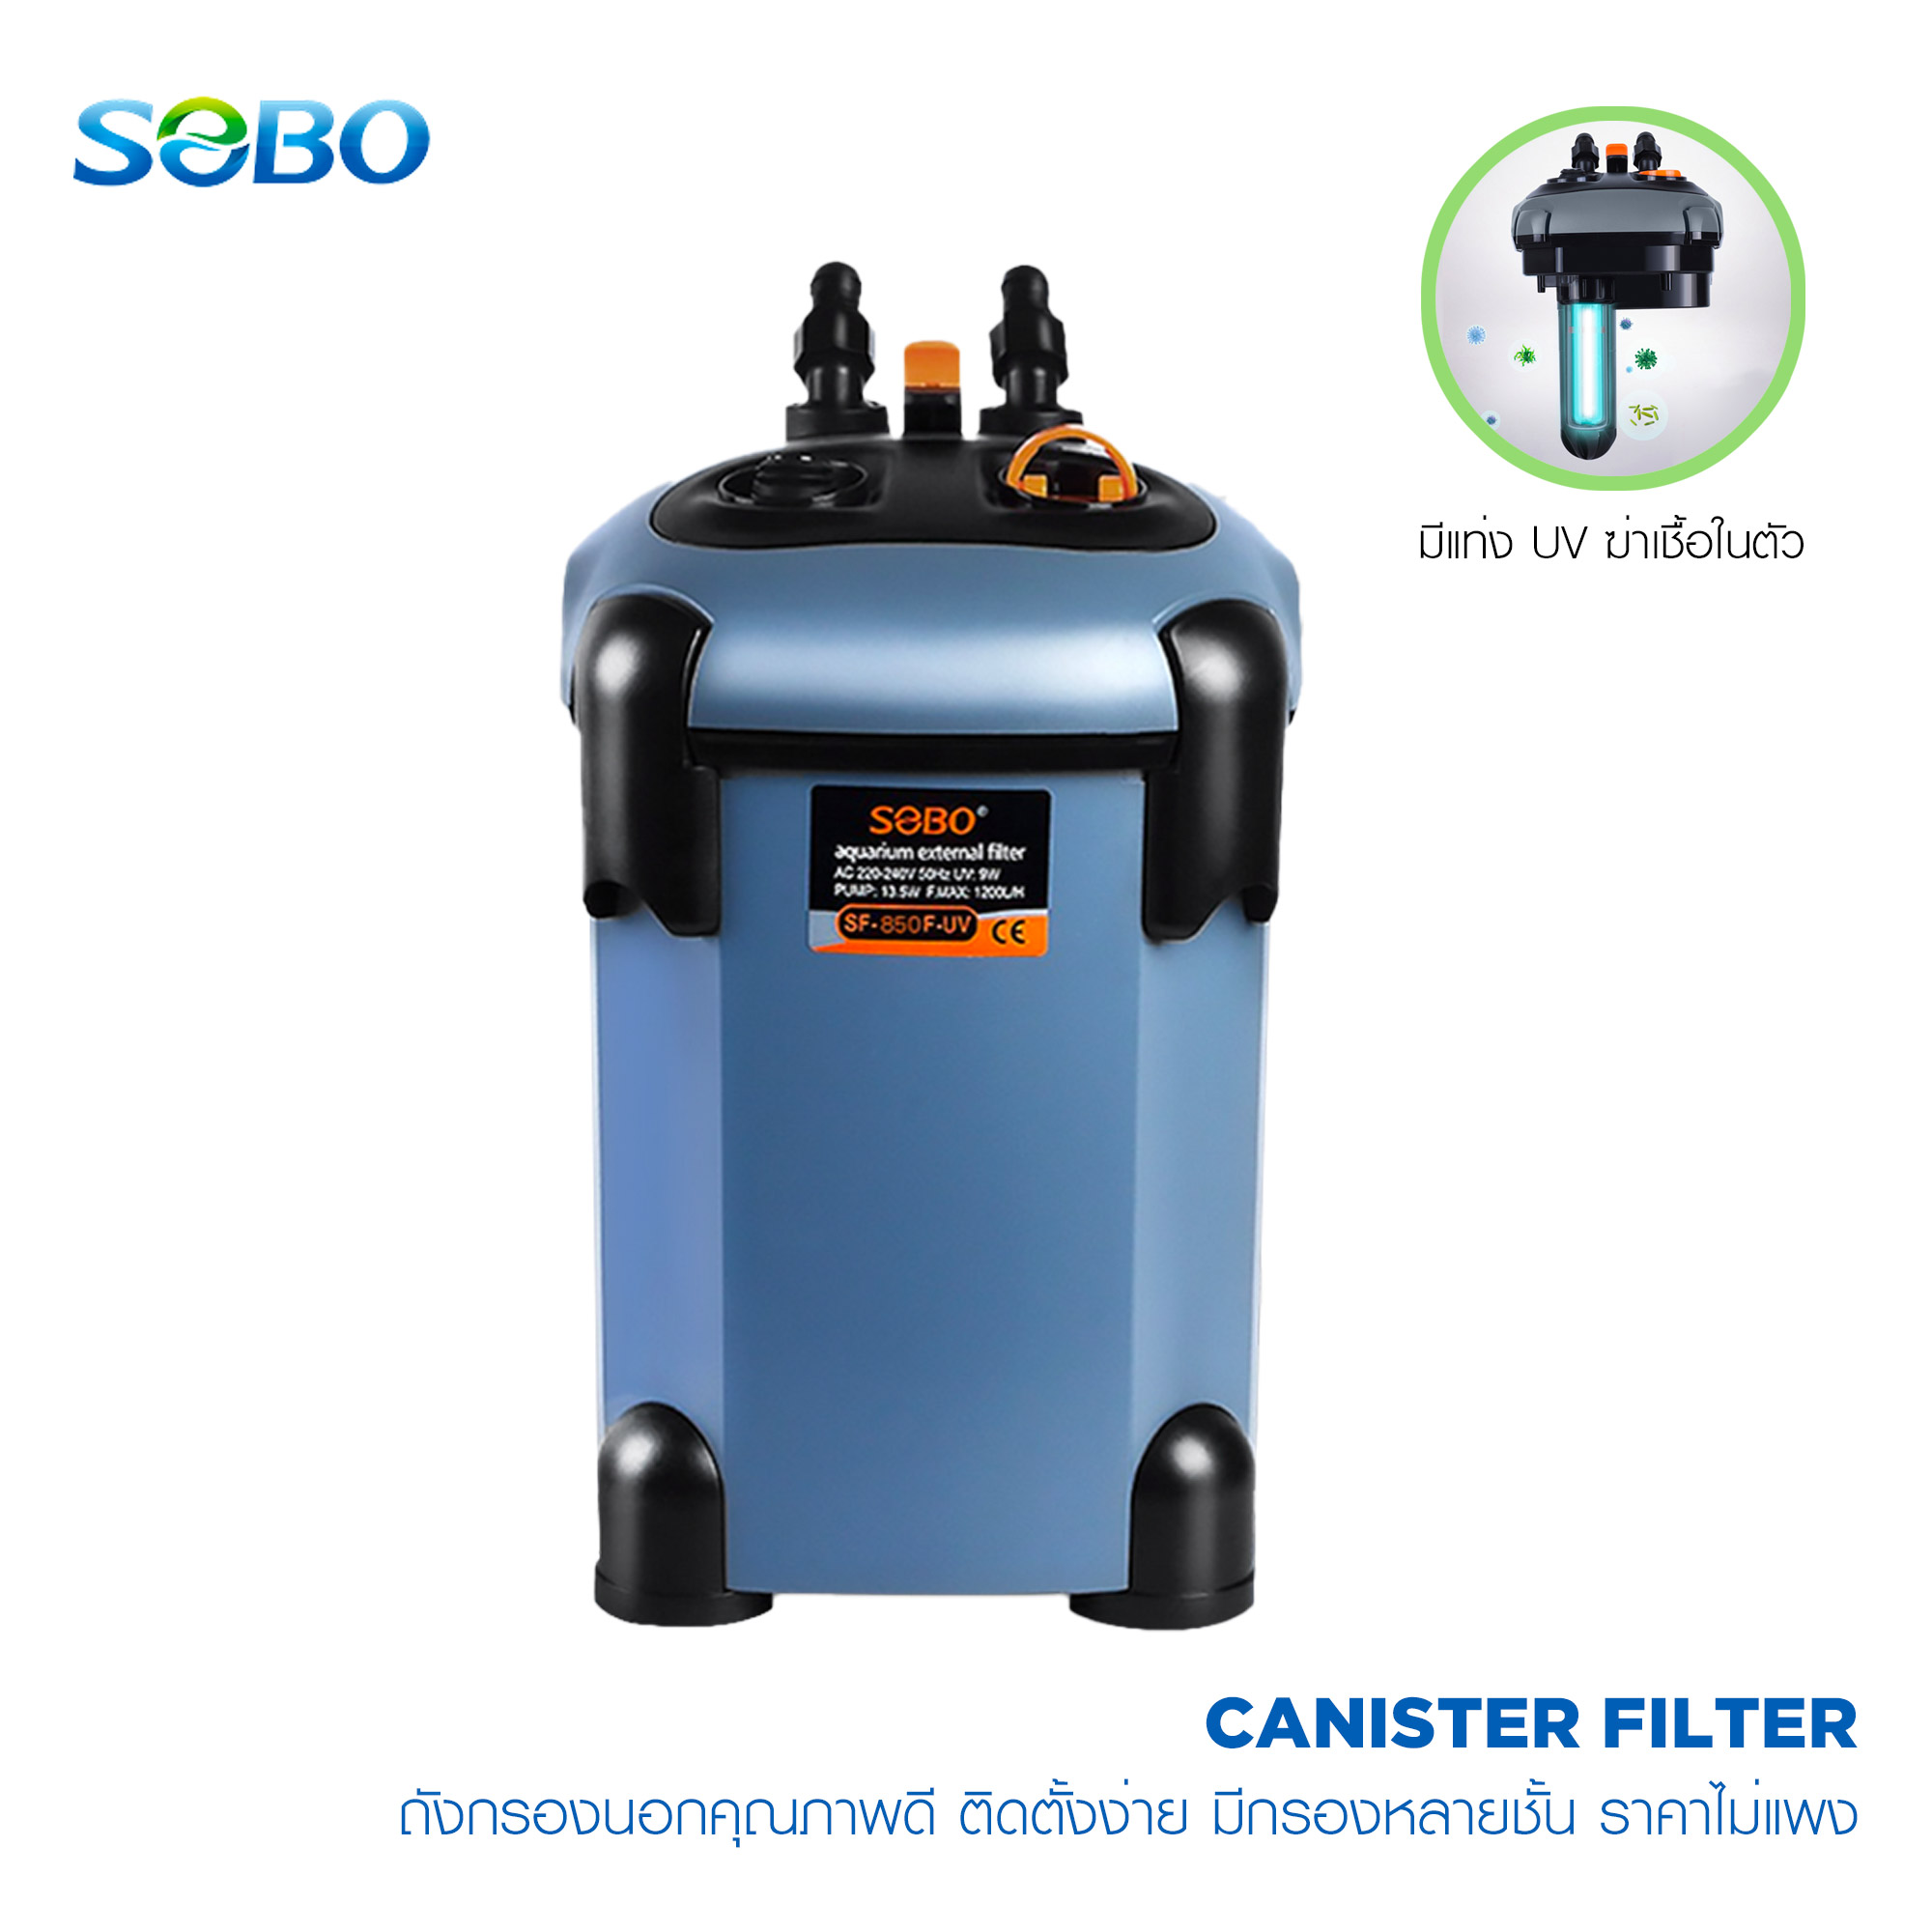 SOBO Canister External Filter ถังกรองนอกพร้อมหลอดยูวี (UV) สำหรับฆ่าเชื้อโรคในตัว และปั๊มในตัว ปรับแต่งชั้นกรองได้ ราคาไม่แพง